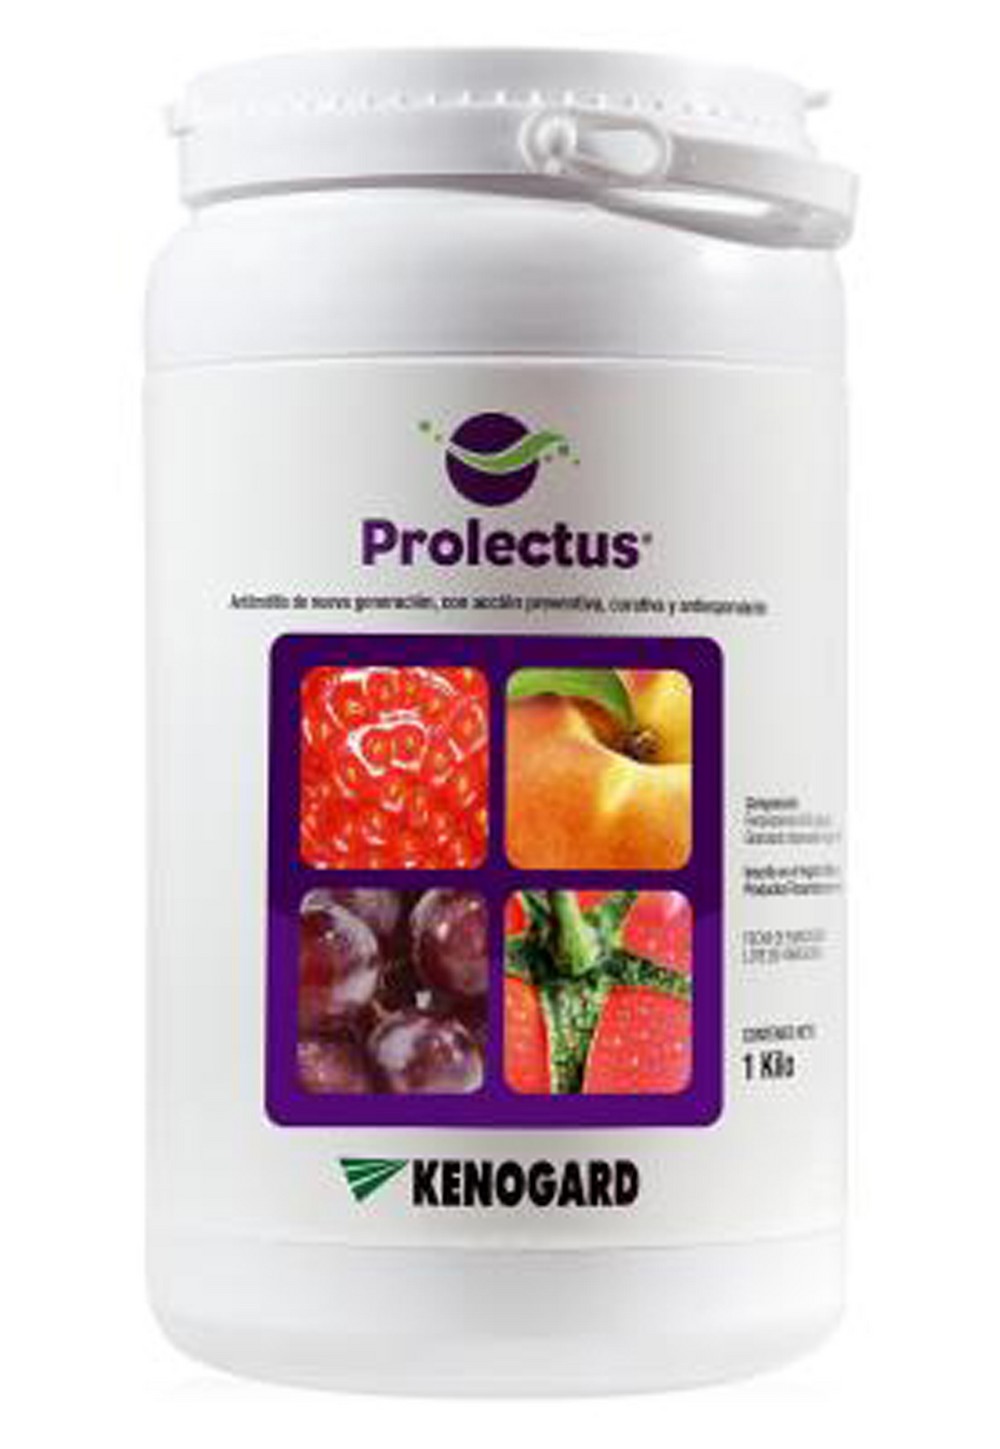 Prolectus® el antibotritis  de referencia de Kenogard